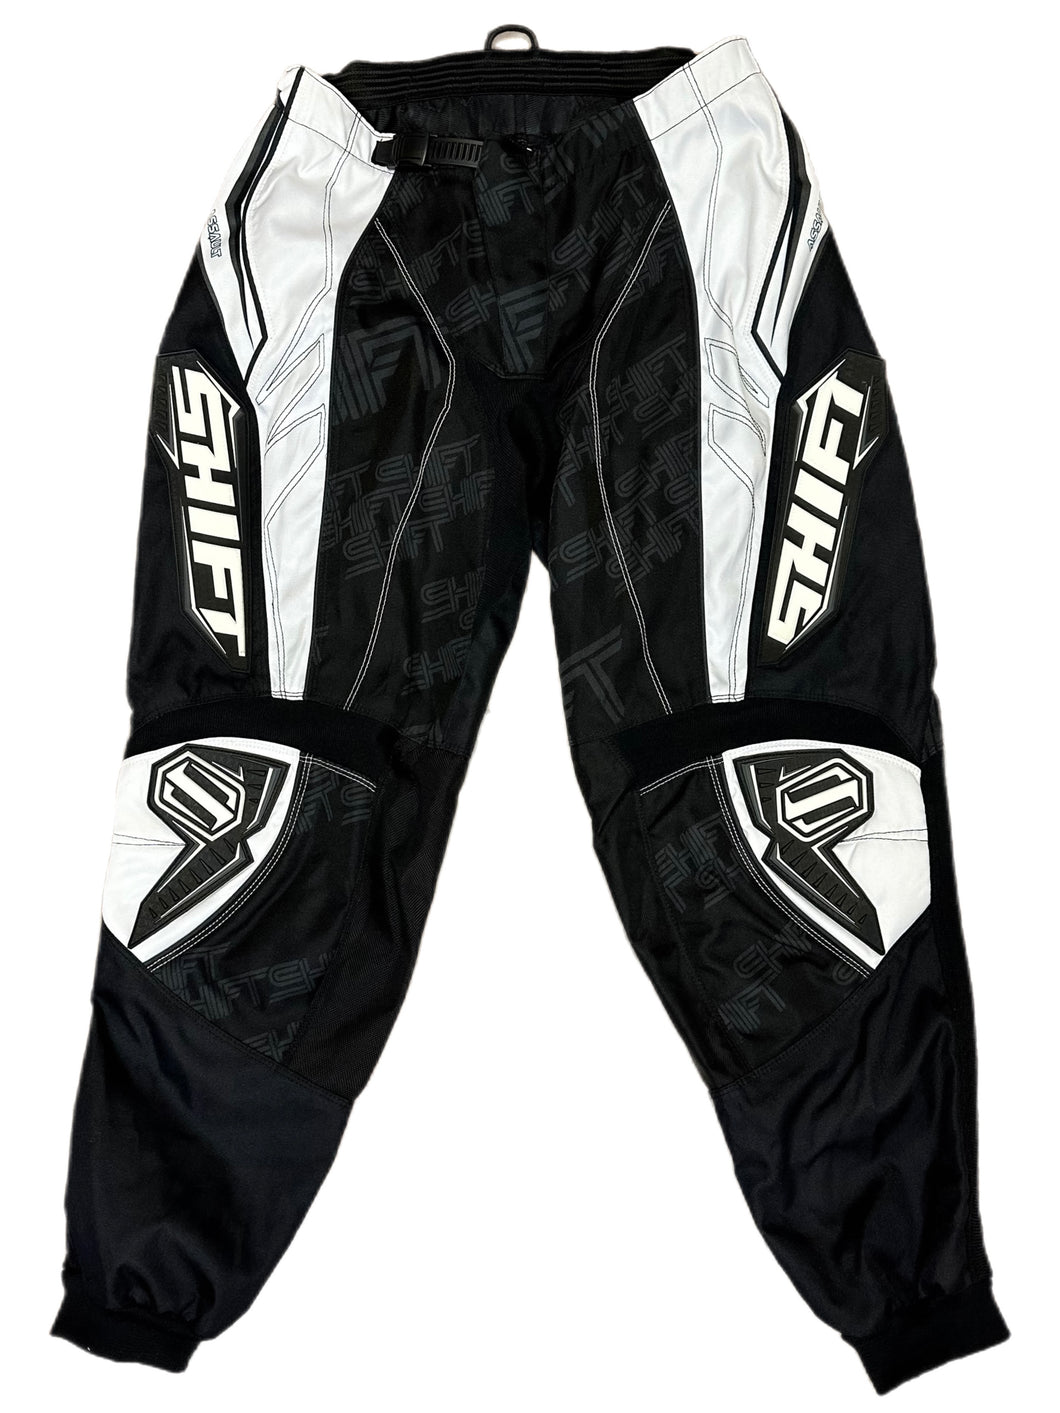 Vintage Shift Motocross Pants